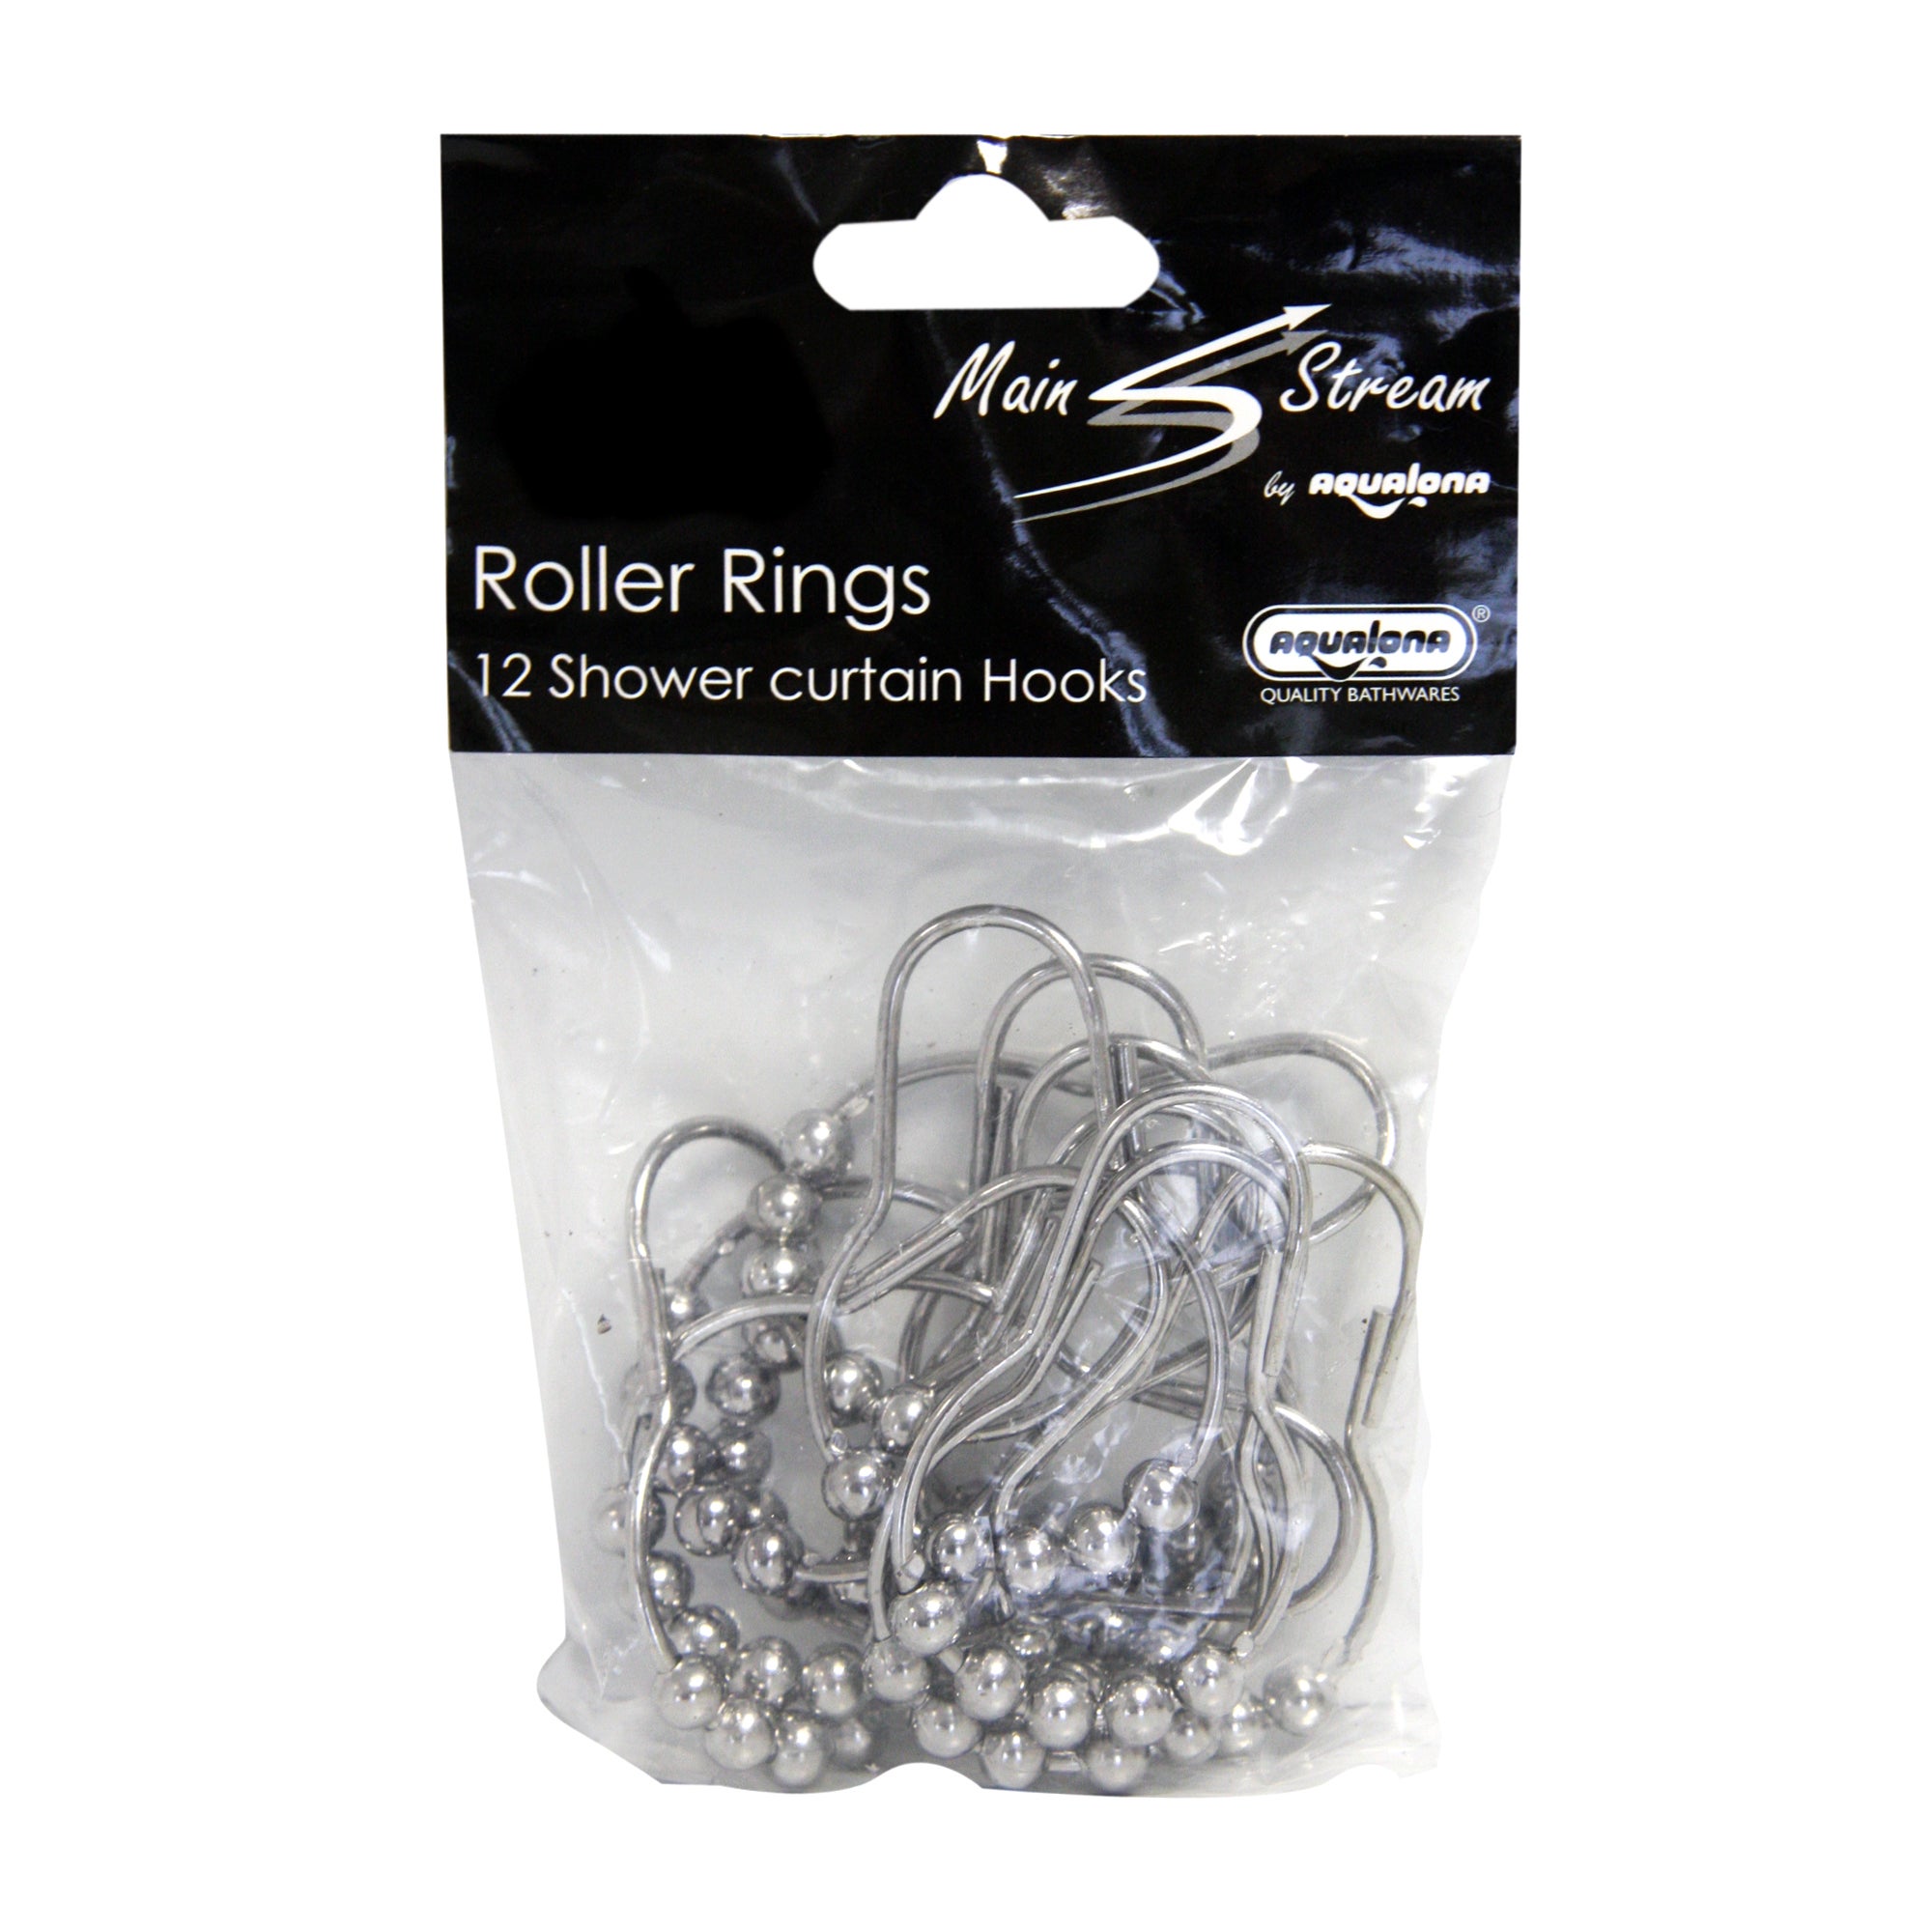 Roller Rings Pack of 12 Shower Curtain Hooks